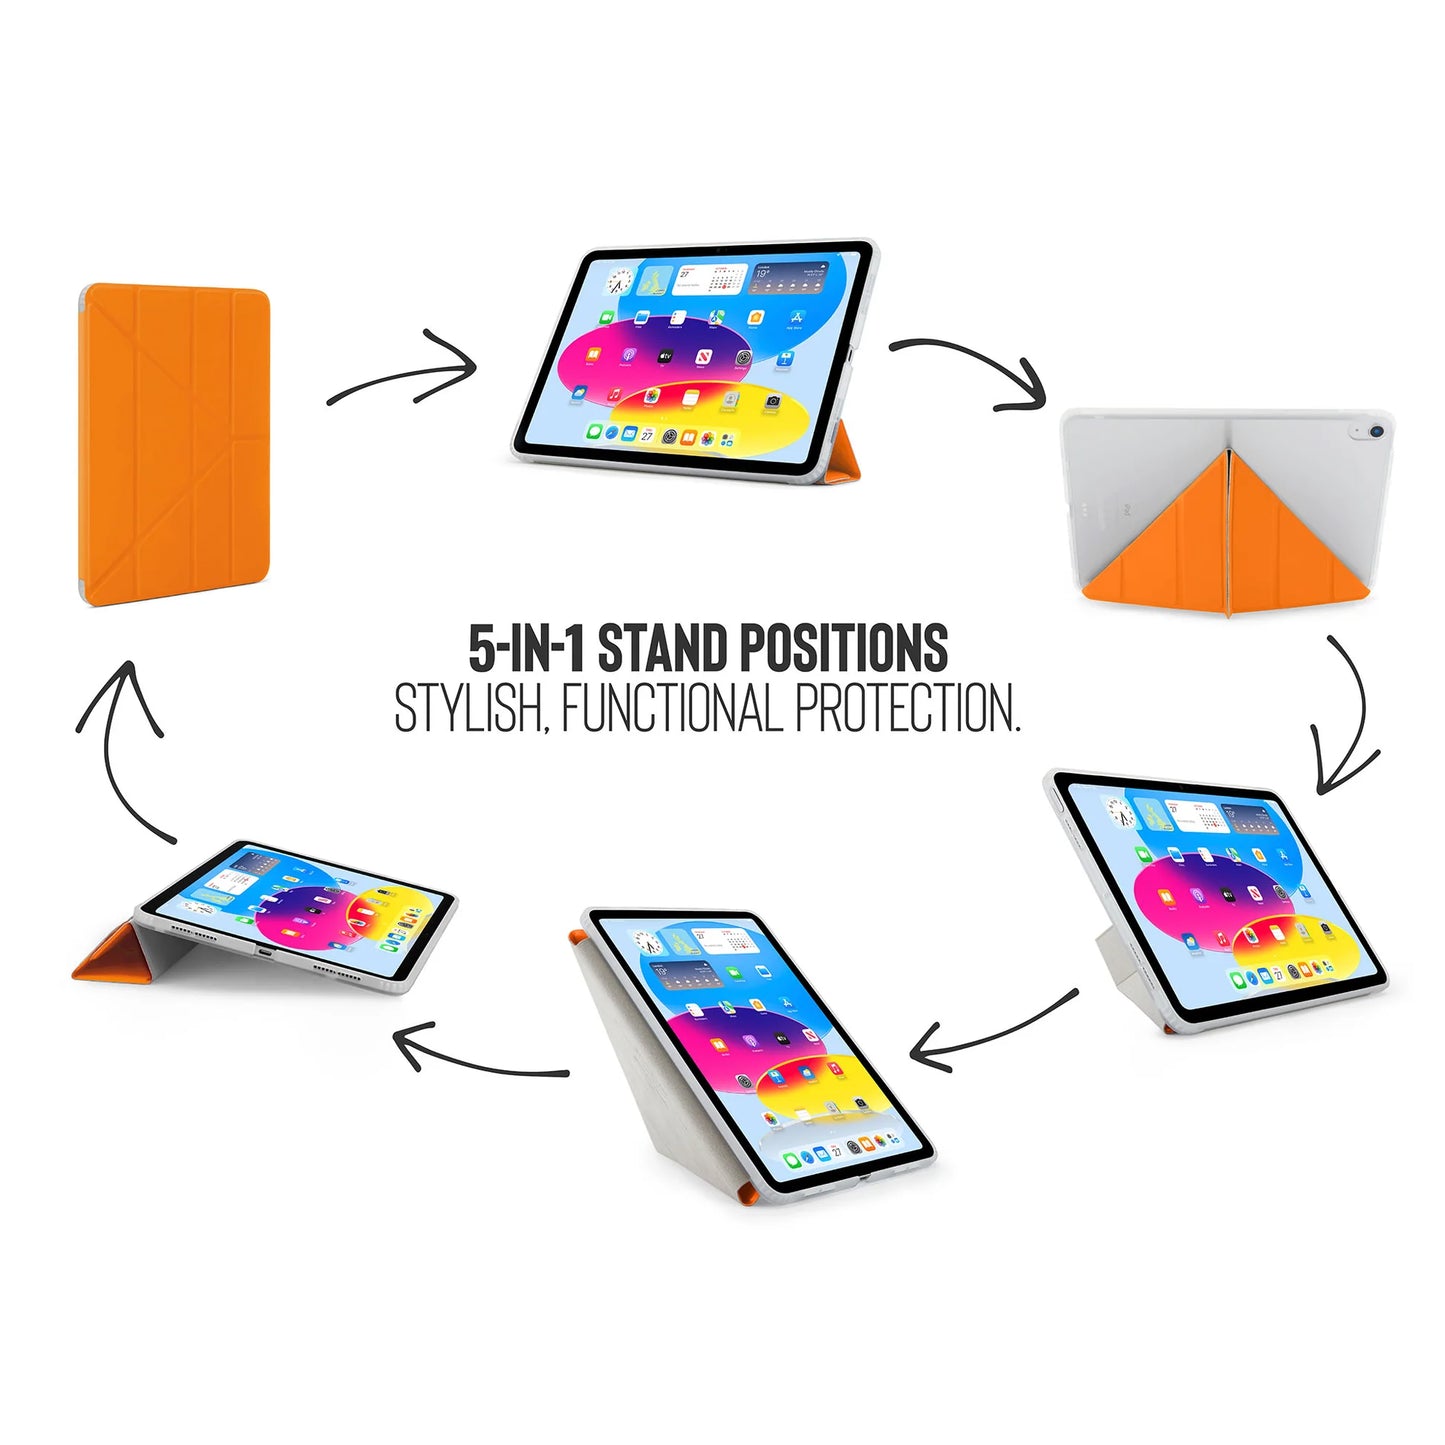 Pipetto Origami Case voor iPad (10e gen.) - Oranje